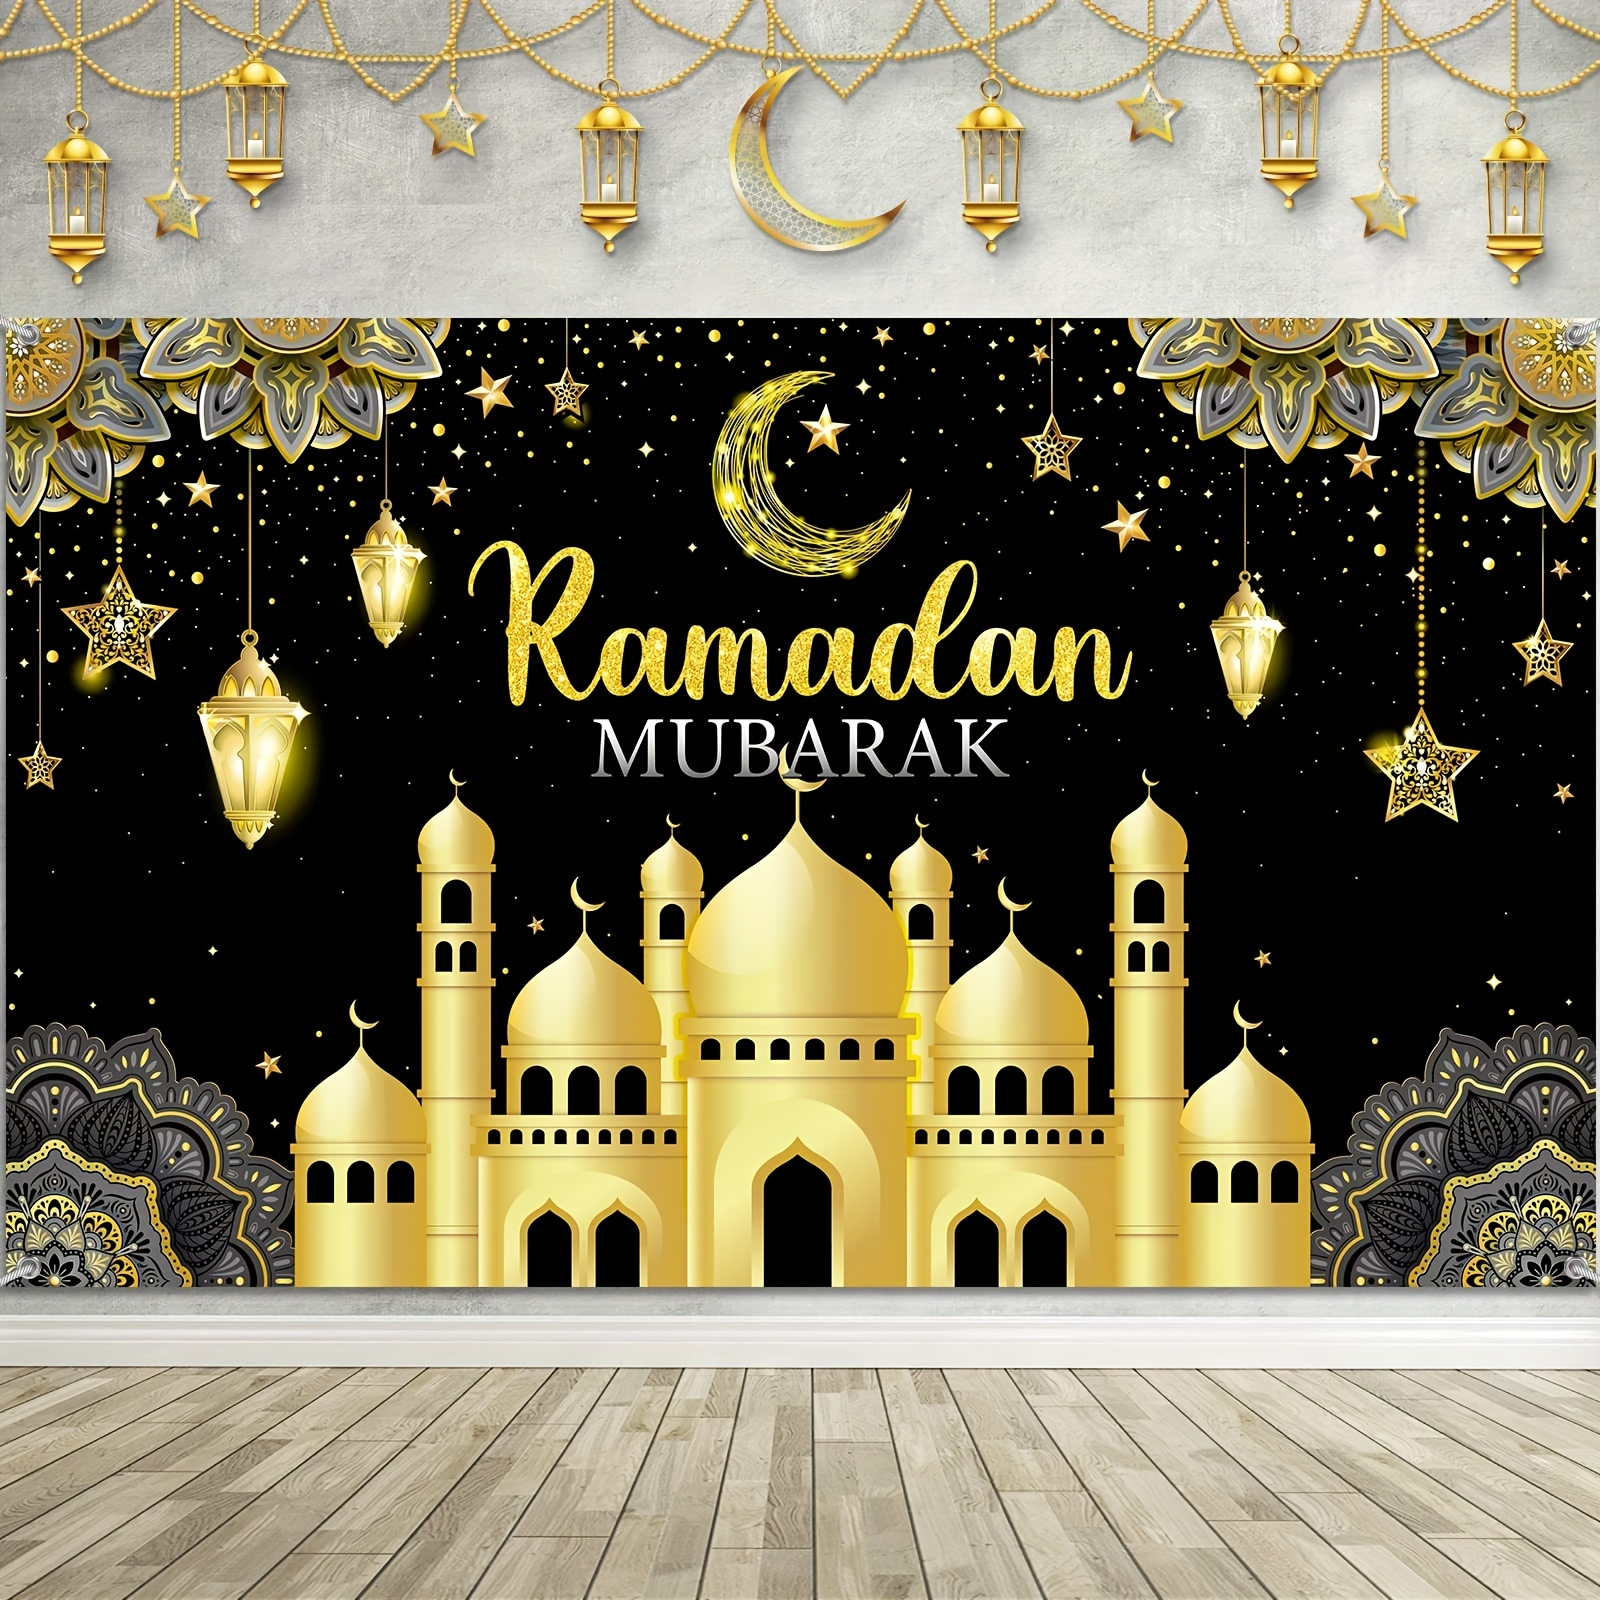 Banner Religioso Ramadan Kareem Con Decoración Islámica